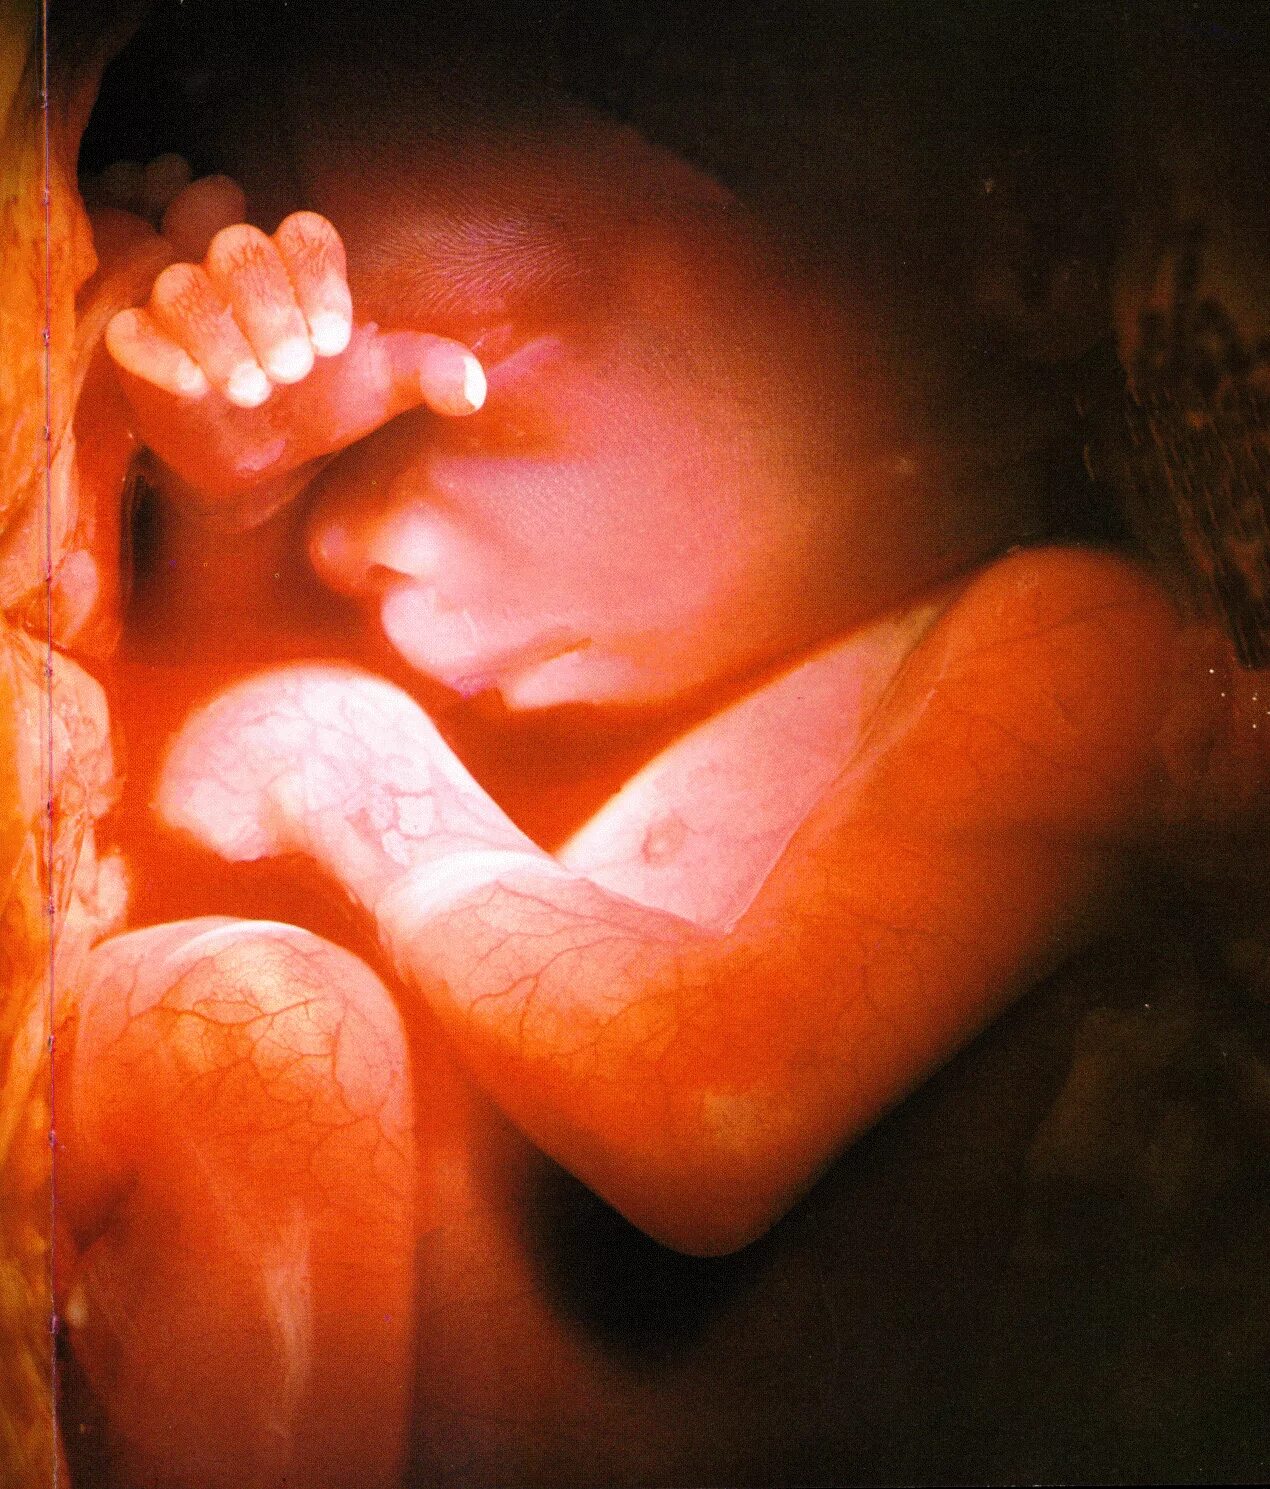 Плод ребенка. Ребенок в утробе 7 месяцев. 32 недели мальчика